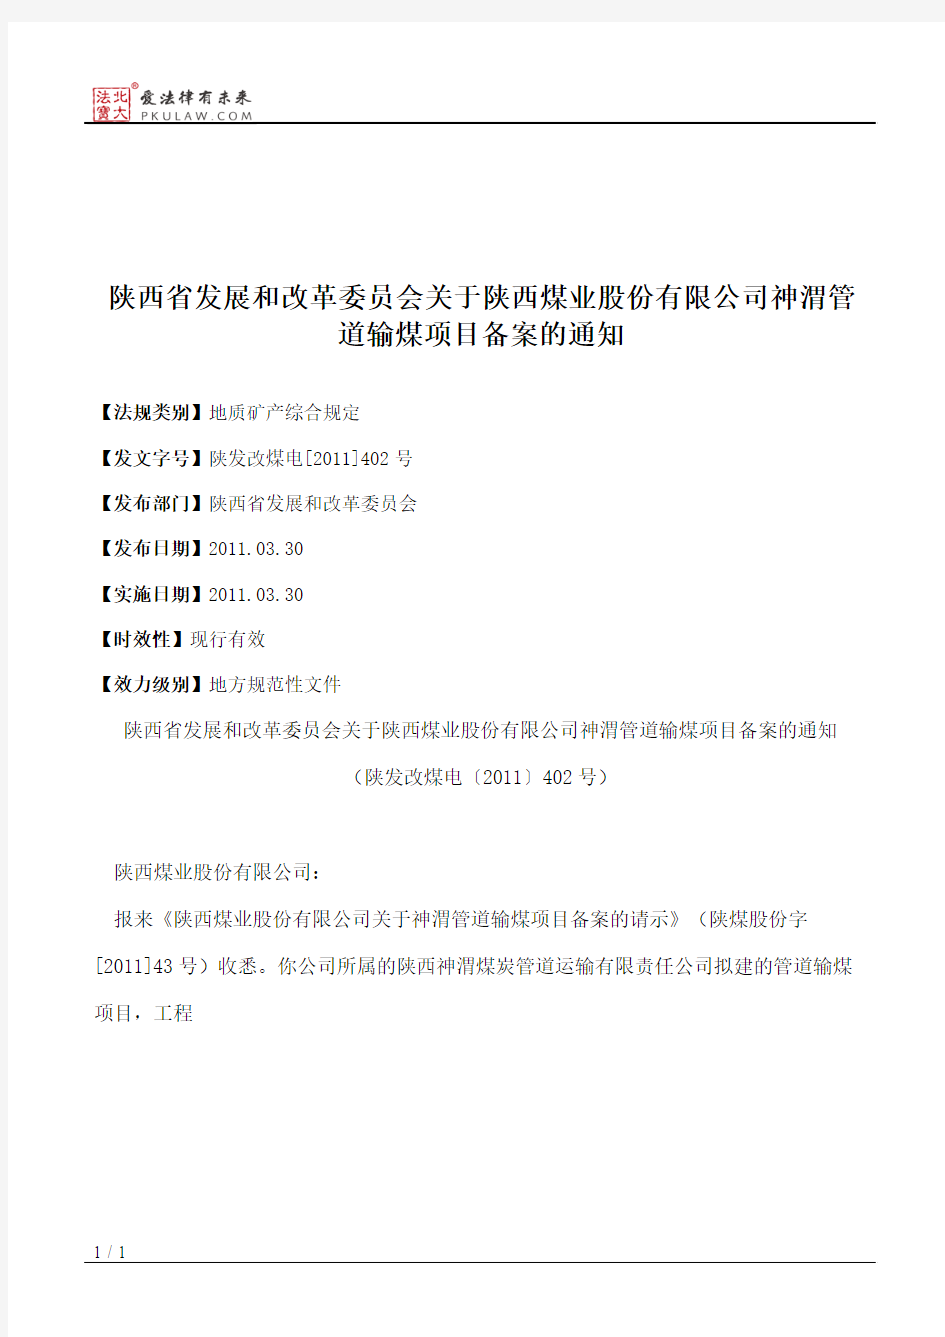 陕西省发展和改革委员会关于陕西煤业股份有限公司神渭管道输煤项